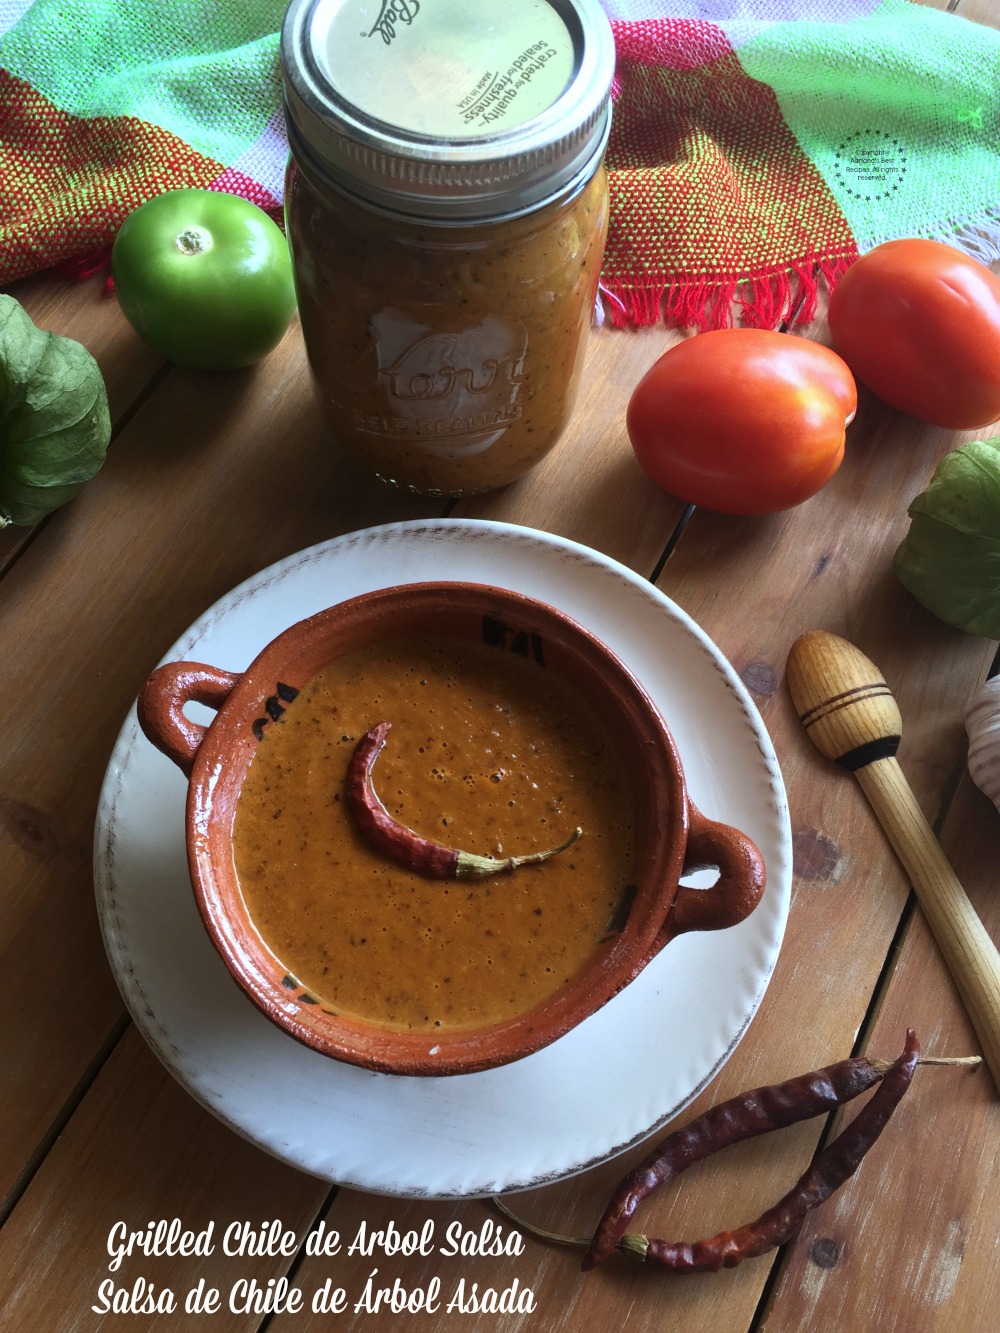 TLa salsa chile de arbol asada es otra salsa casera mexicana que usamos para acompañar casi todo. Esta salsa de chile de árbol es picante pero muy sabrosa